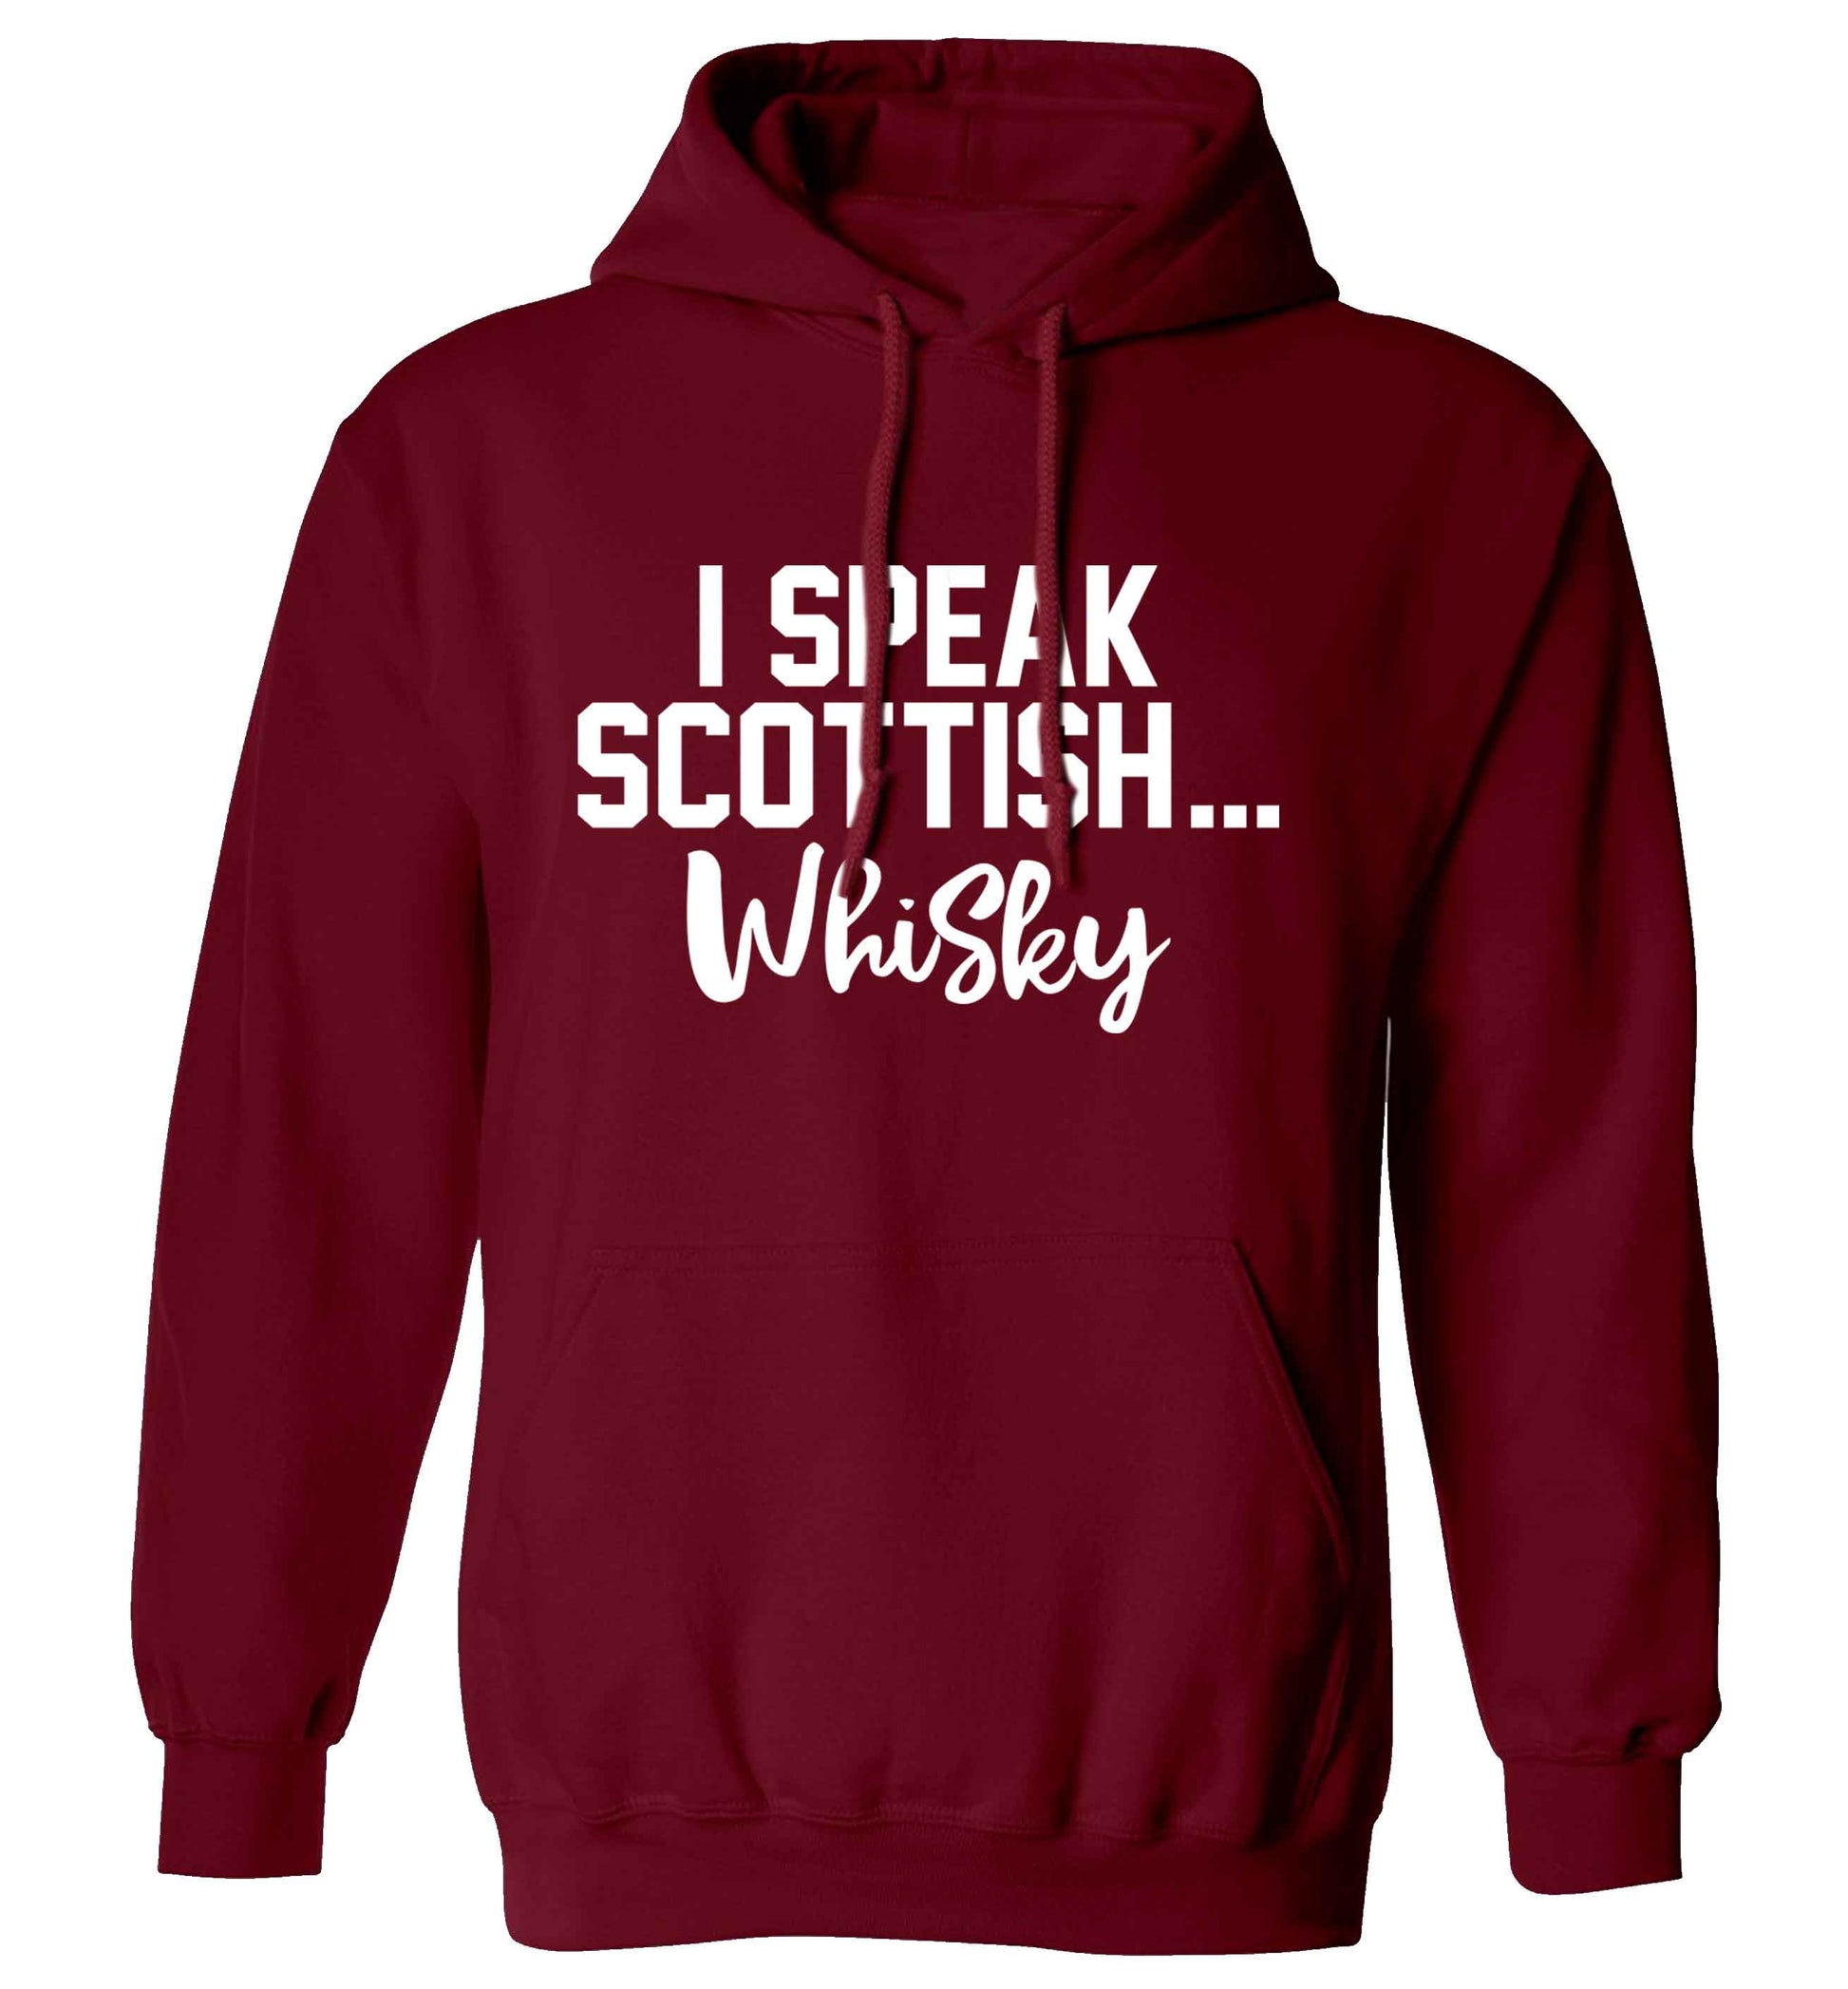 I speak scottish...whisky adults unisex maroon hoodie 2XL